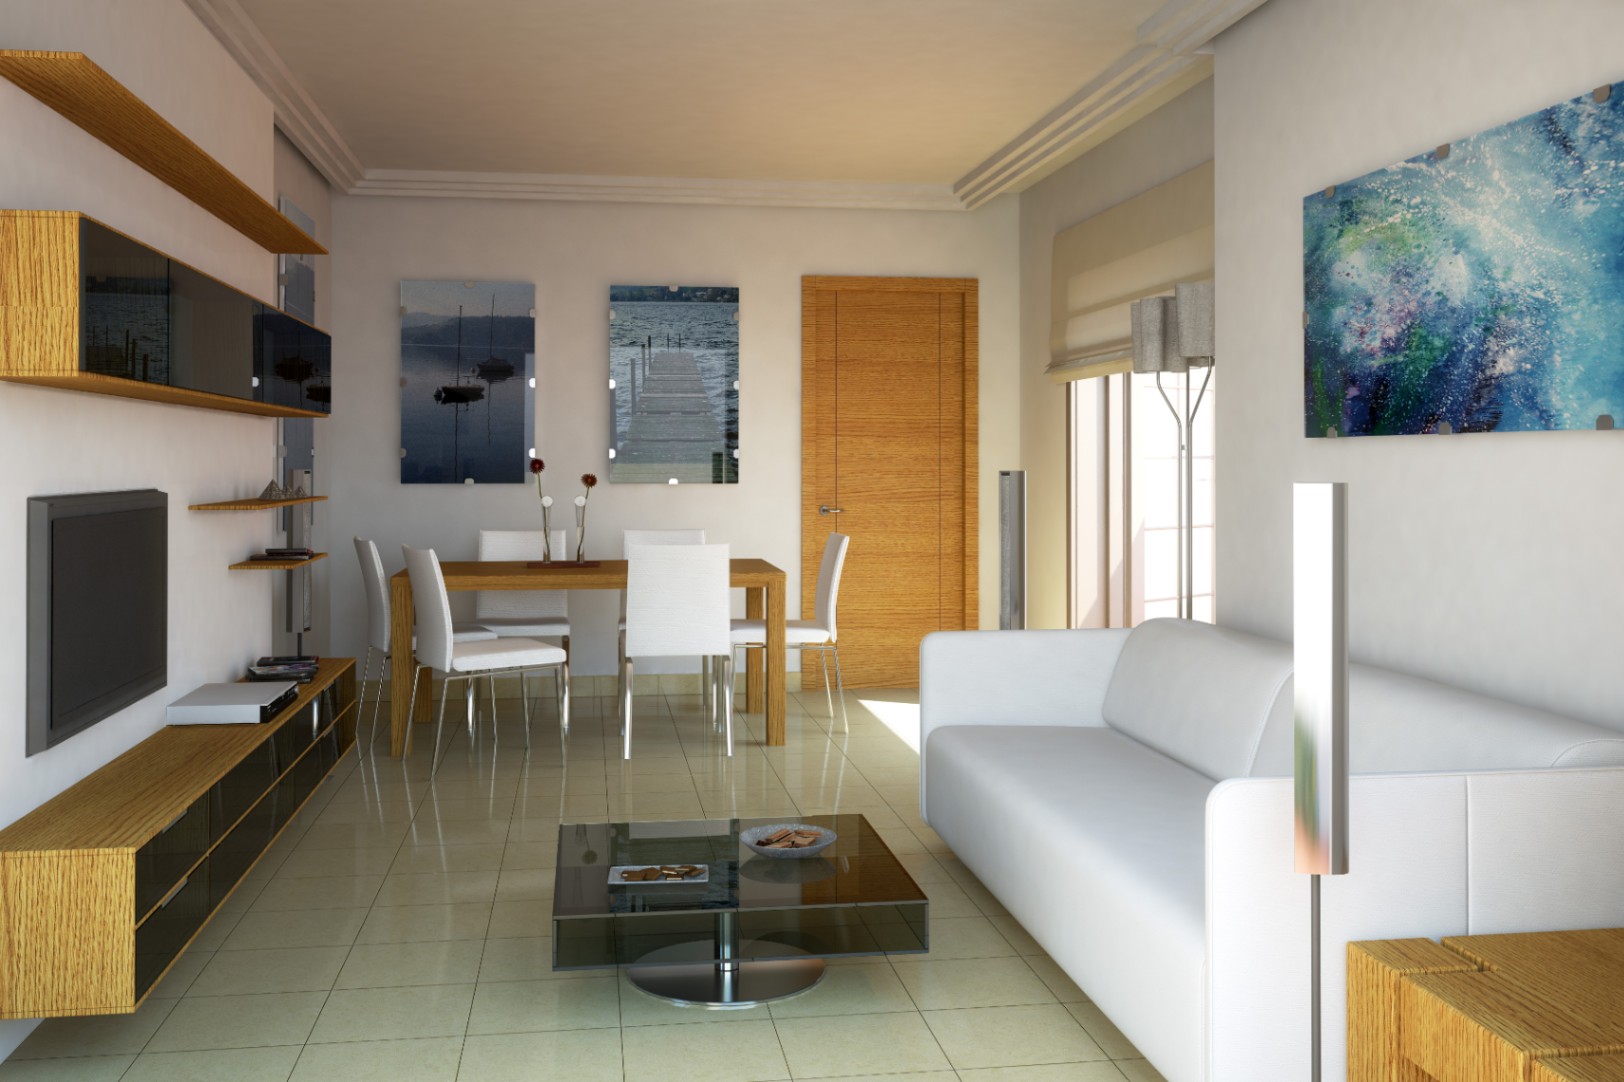 Spectaculair appartement met 2 slaapkamers in de urbanisatie Gasparot met zwembad en garage inbegrepen